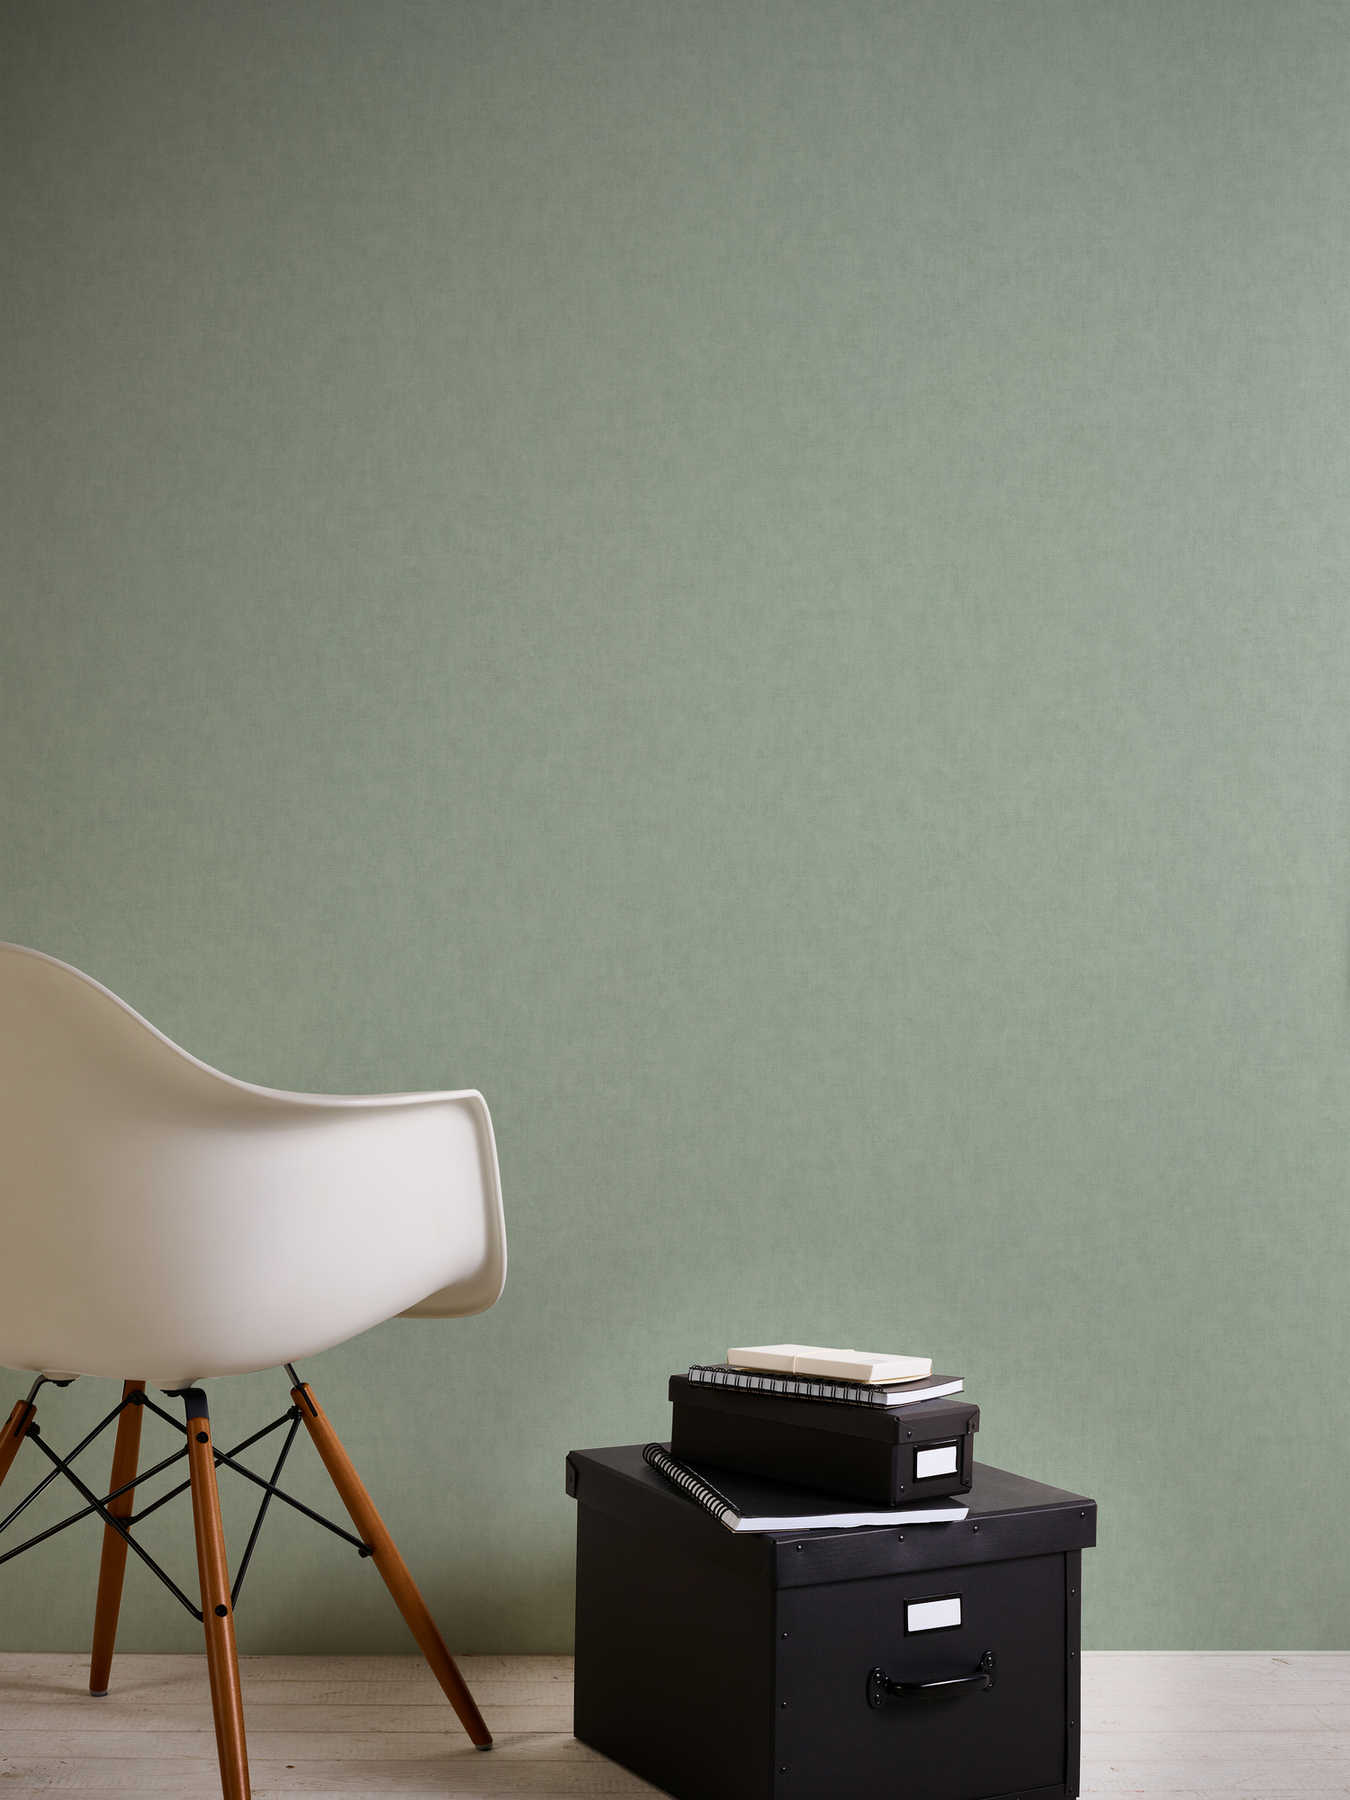             Vliesbehang textiel-look in Scandinavische stijl - grijs, groen
        